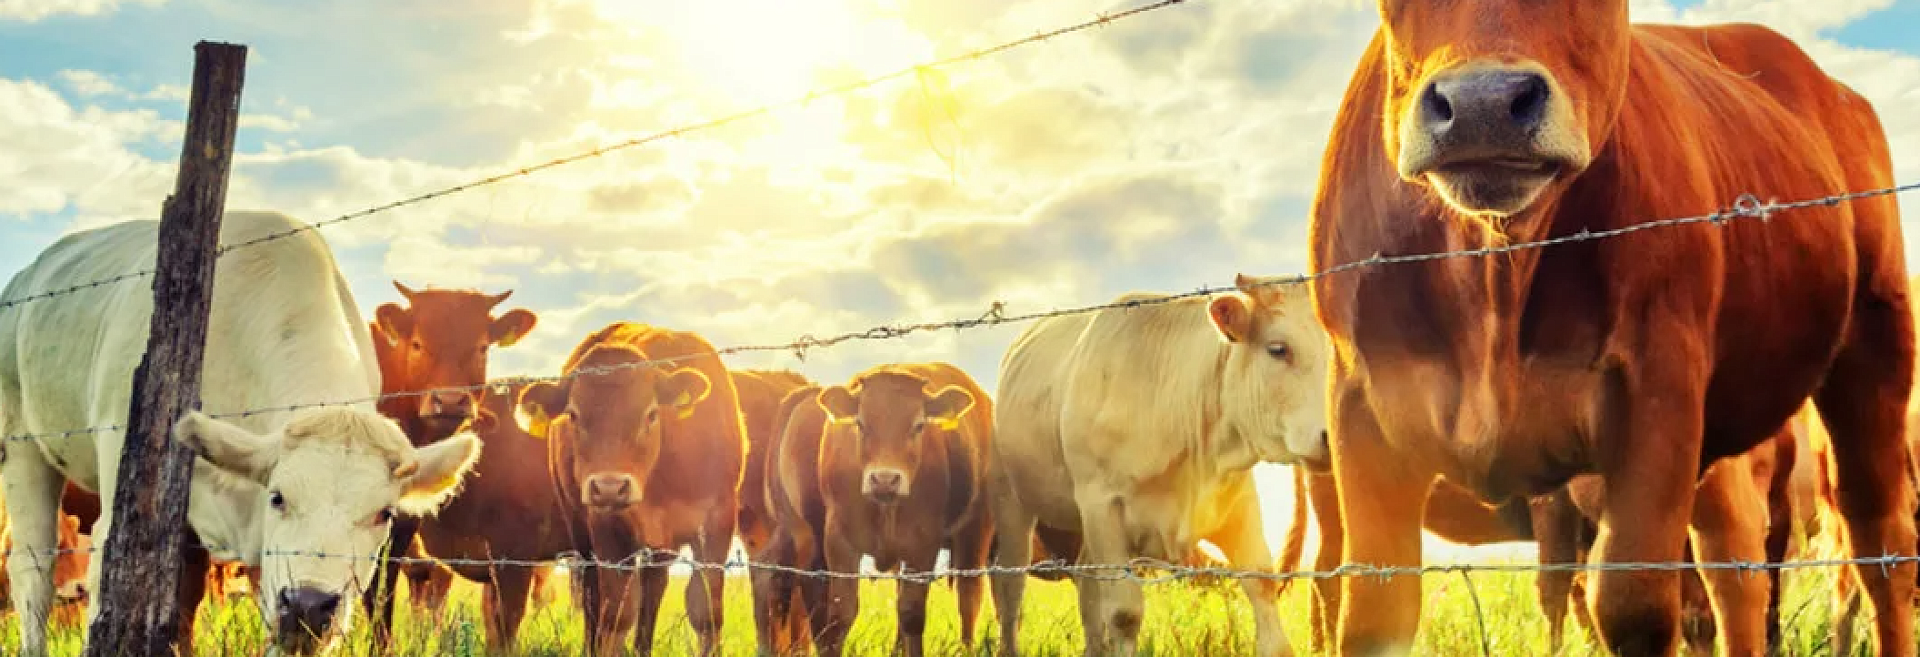 Как летом защитить сельскохозяйственных животных от теплового удара?